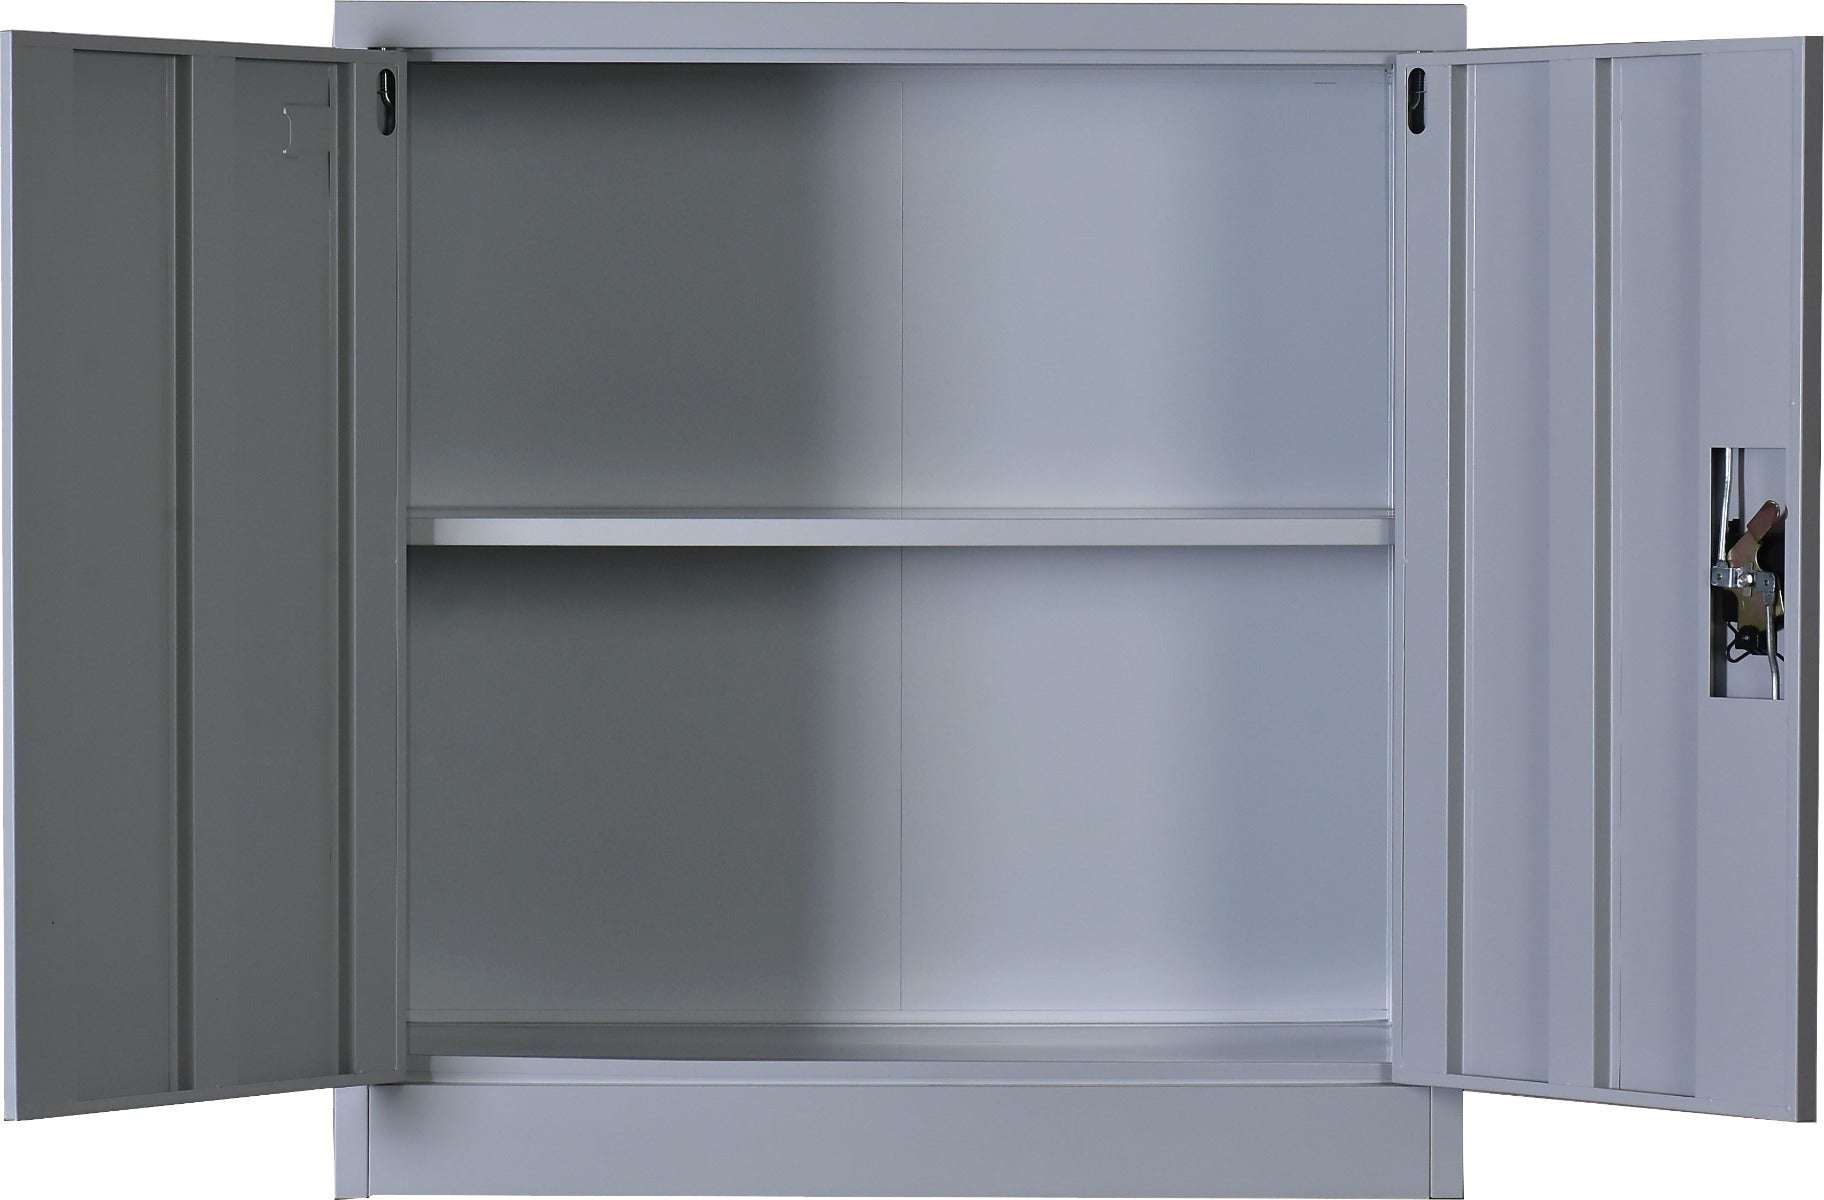 Two-Door Shelf Office Gym Filing Storage Locker Cabinet Safe - image6